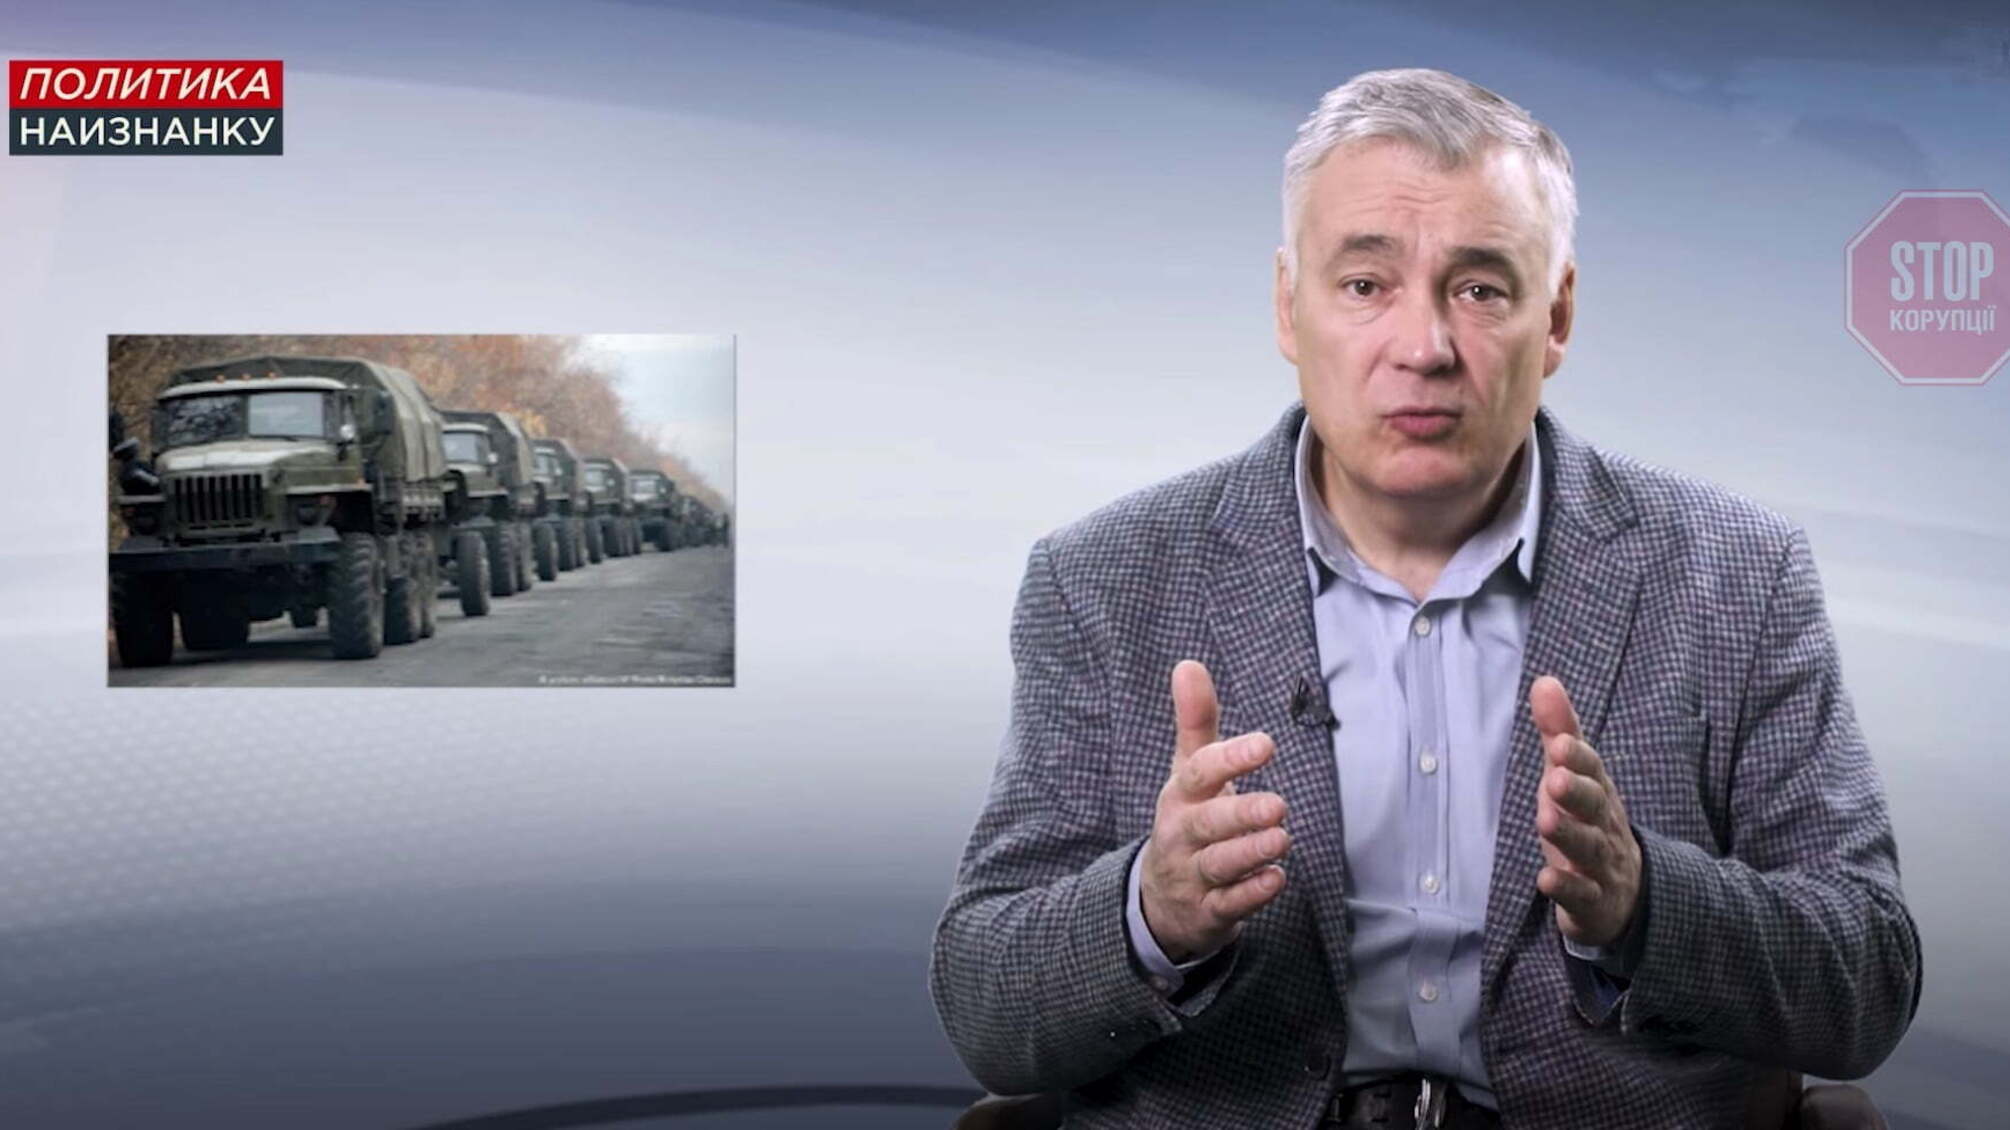 Про «російські танки у Луганську» 2017-го: українська розвідка програє інфовійну спецслужбам РФ